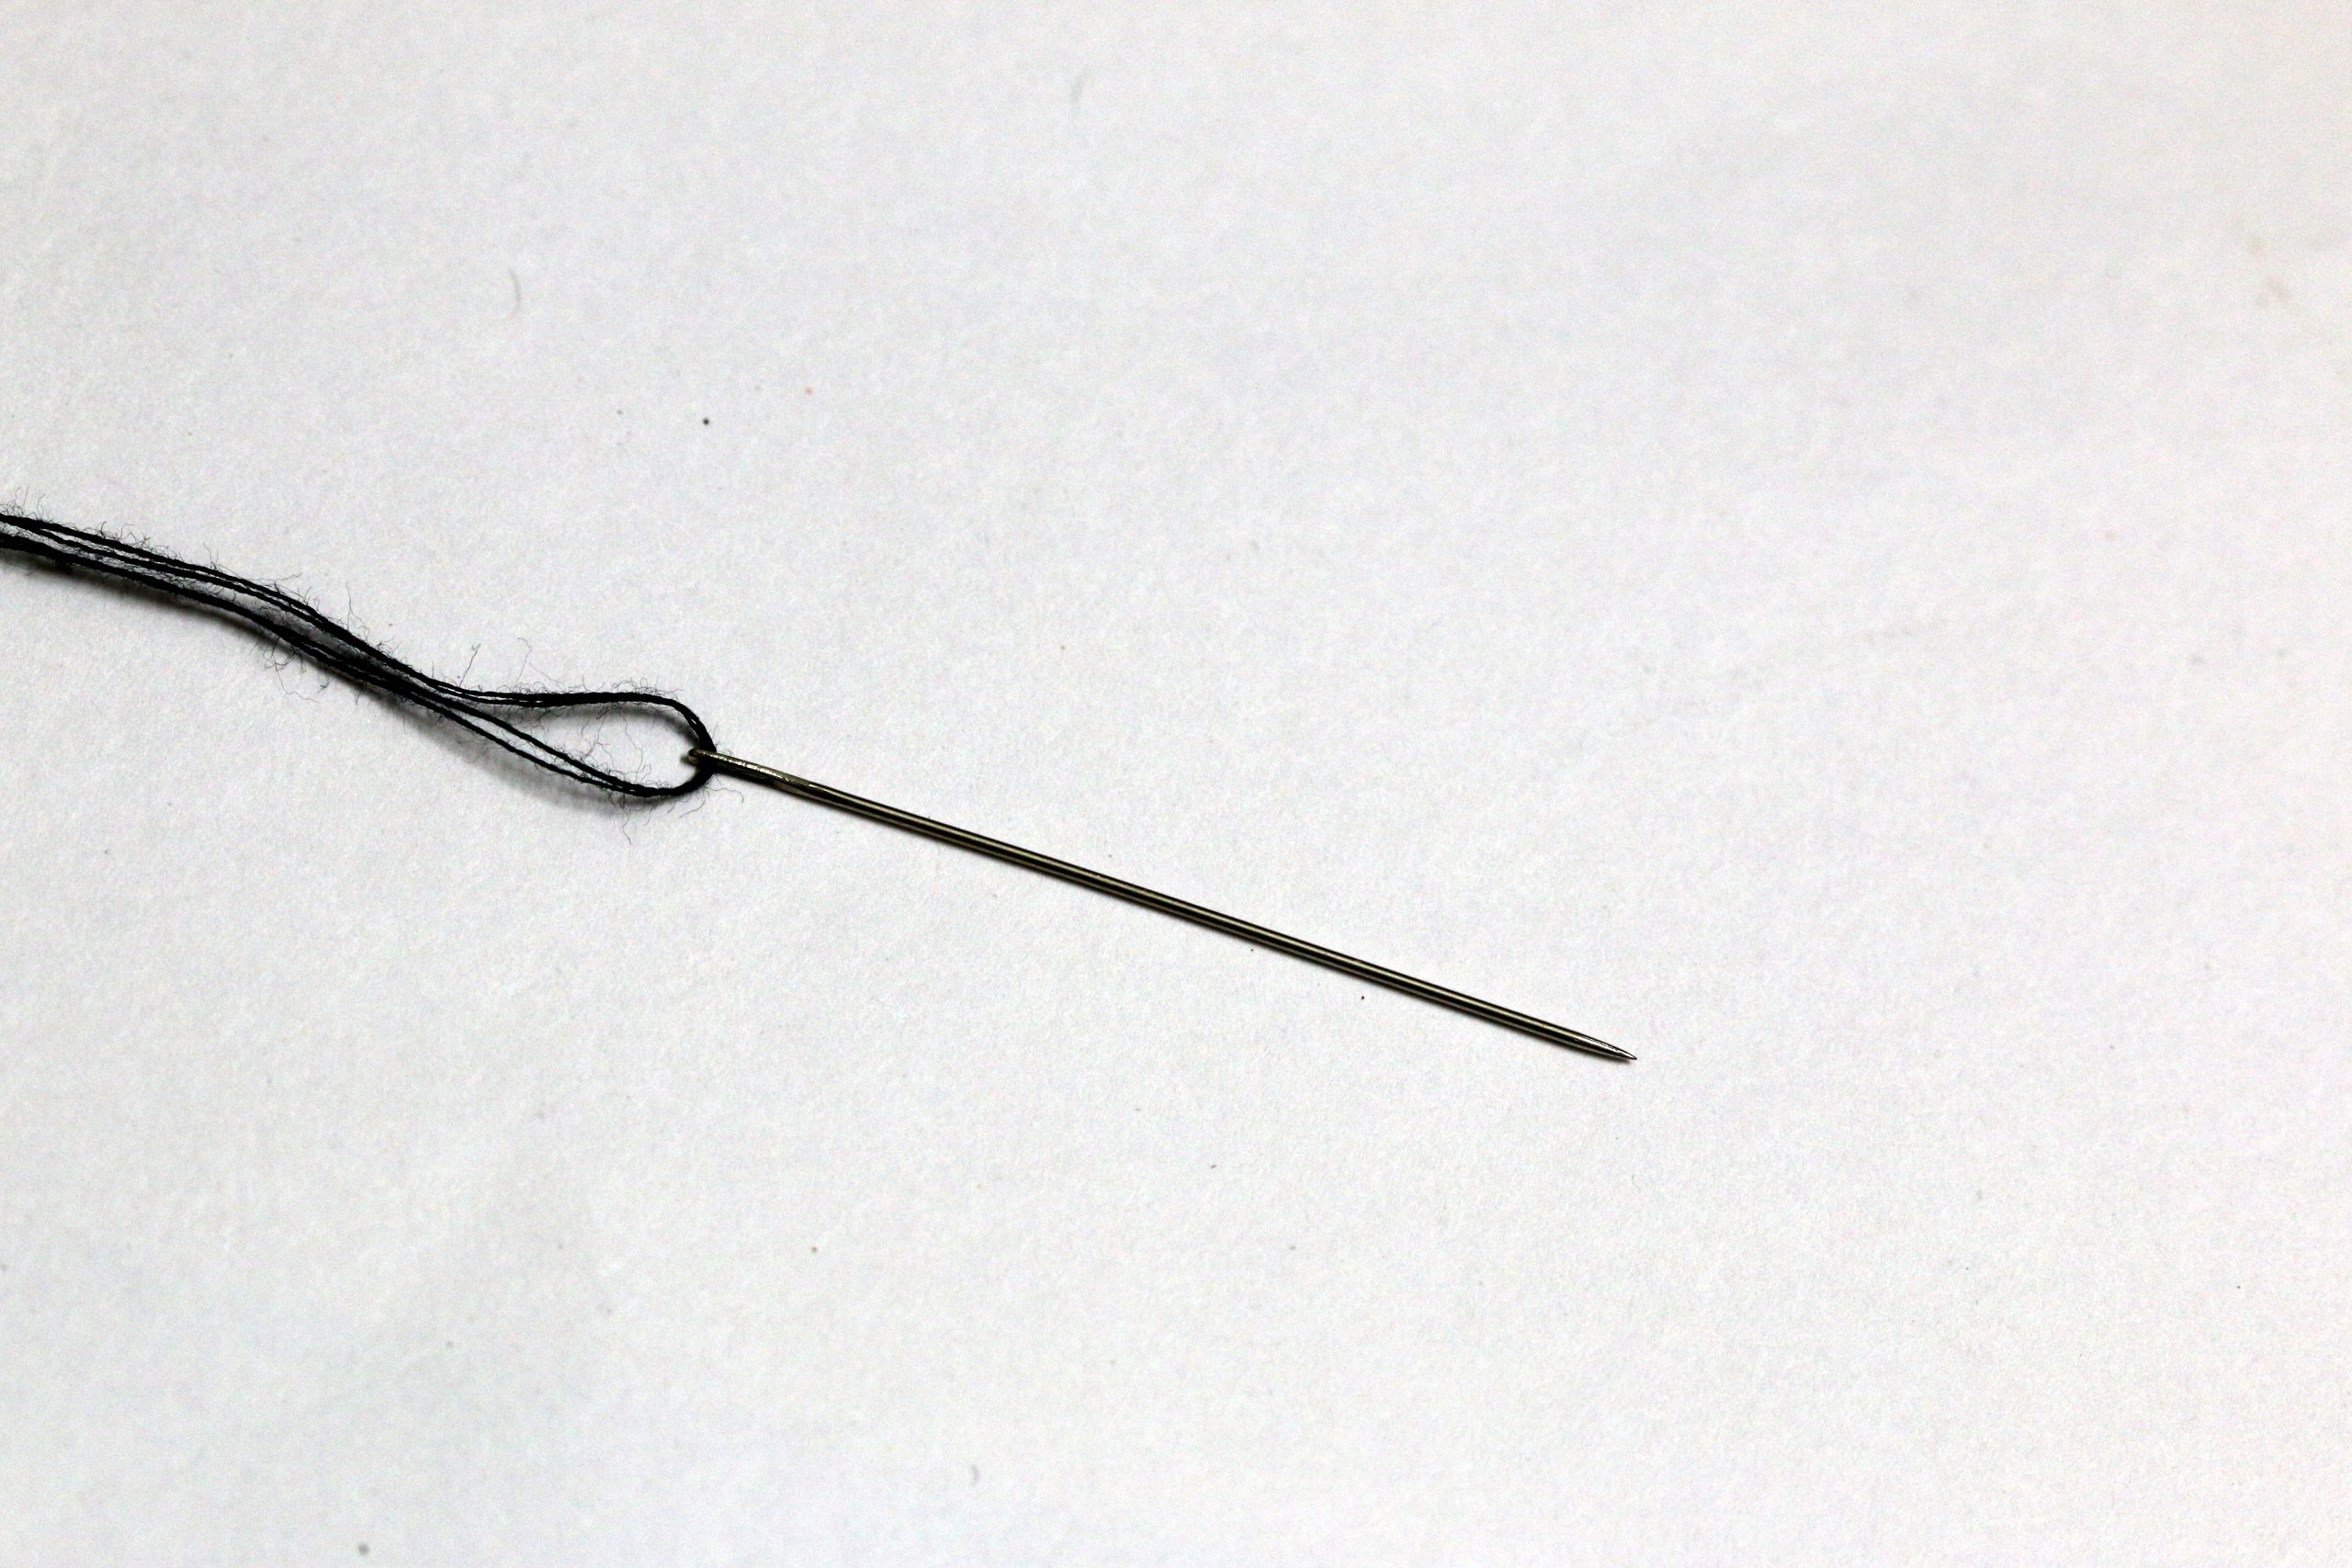 Needle with thread